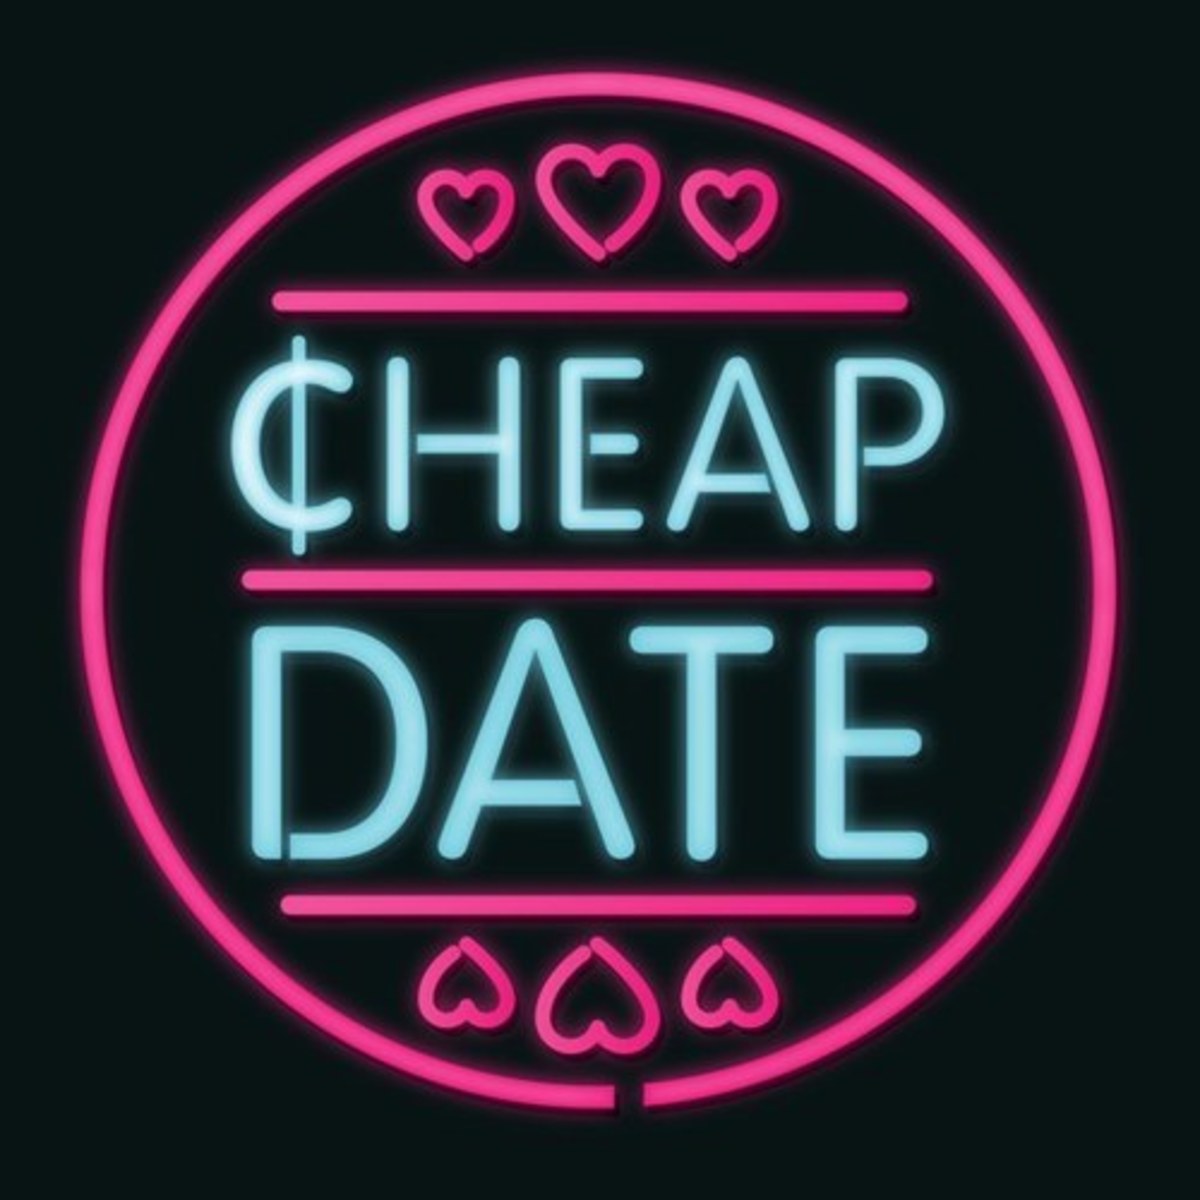 Cheap Dates That No Woman Wants